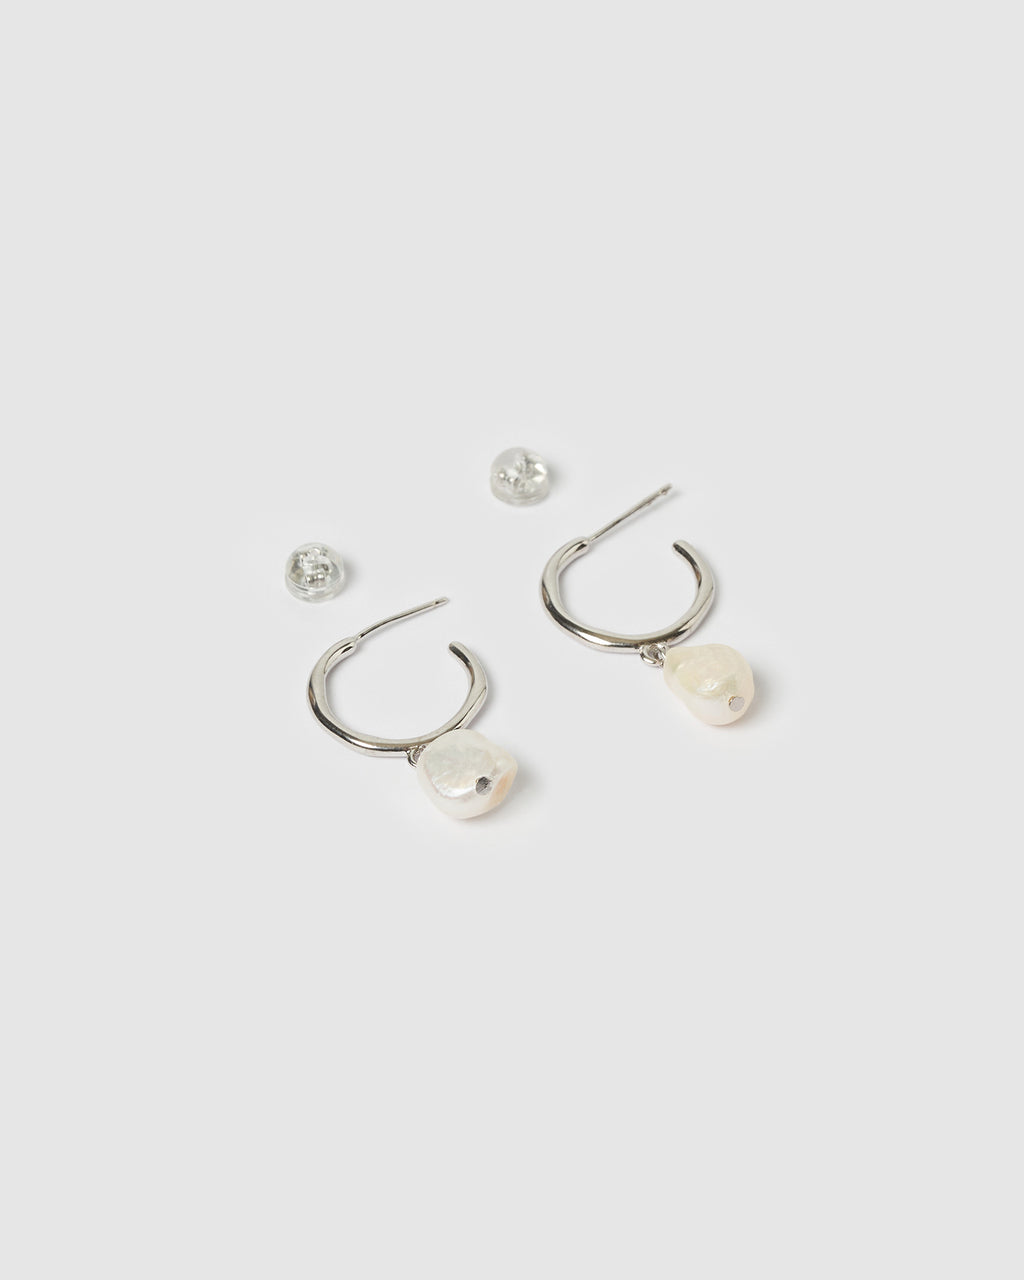 Izoa Enlighten Mini Hoop Earrings Silver Freshwater Pearl